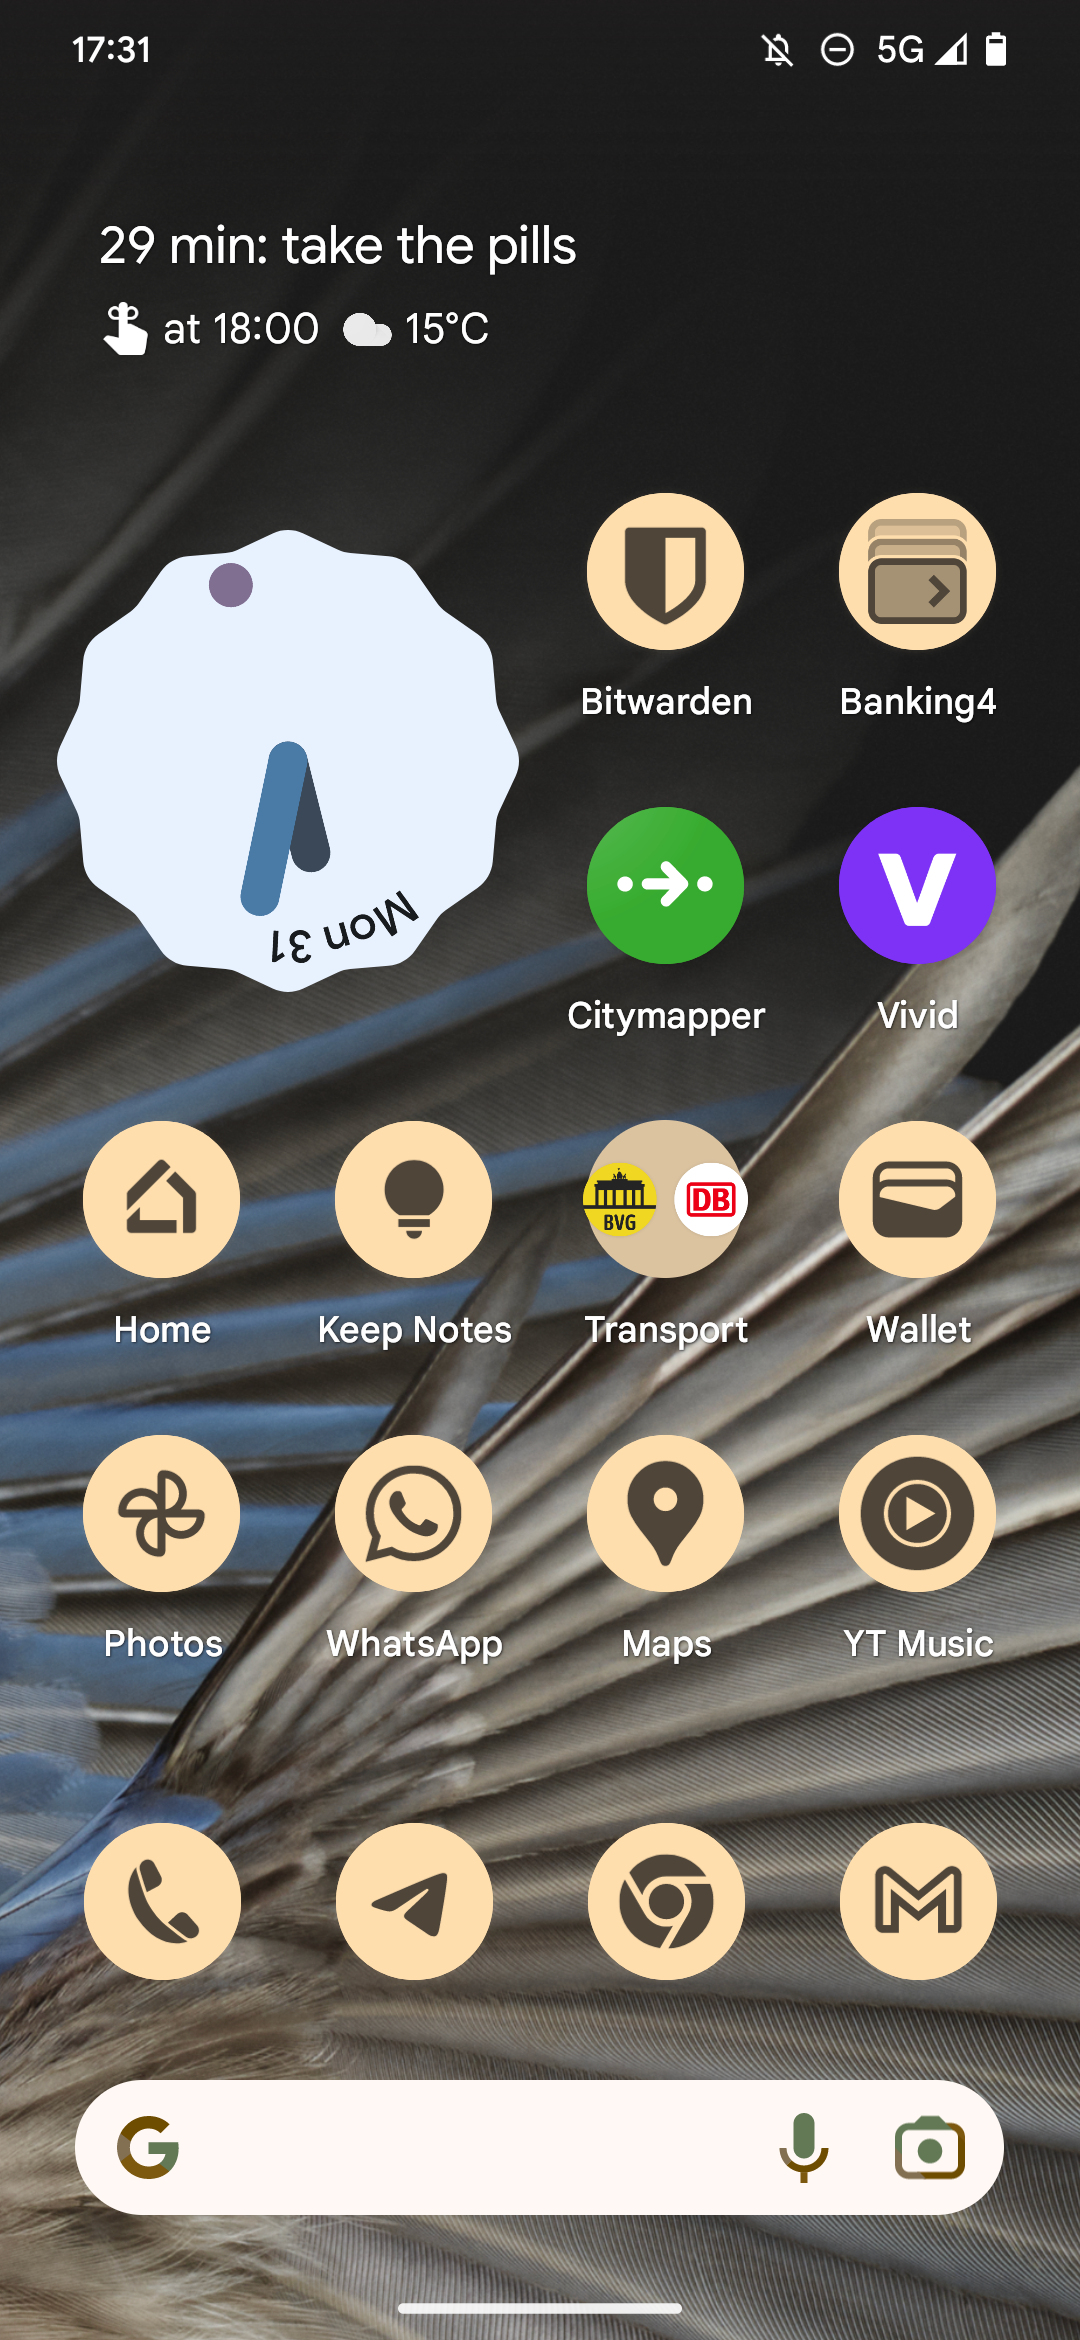 Captura de tela da tela inicial do Pixel Launcher com (principalmente) ícones temáticos